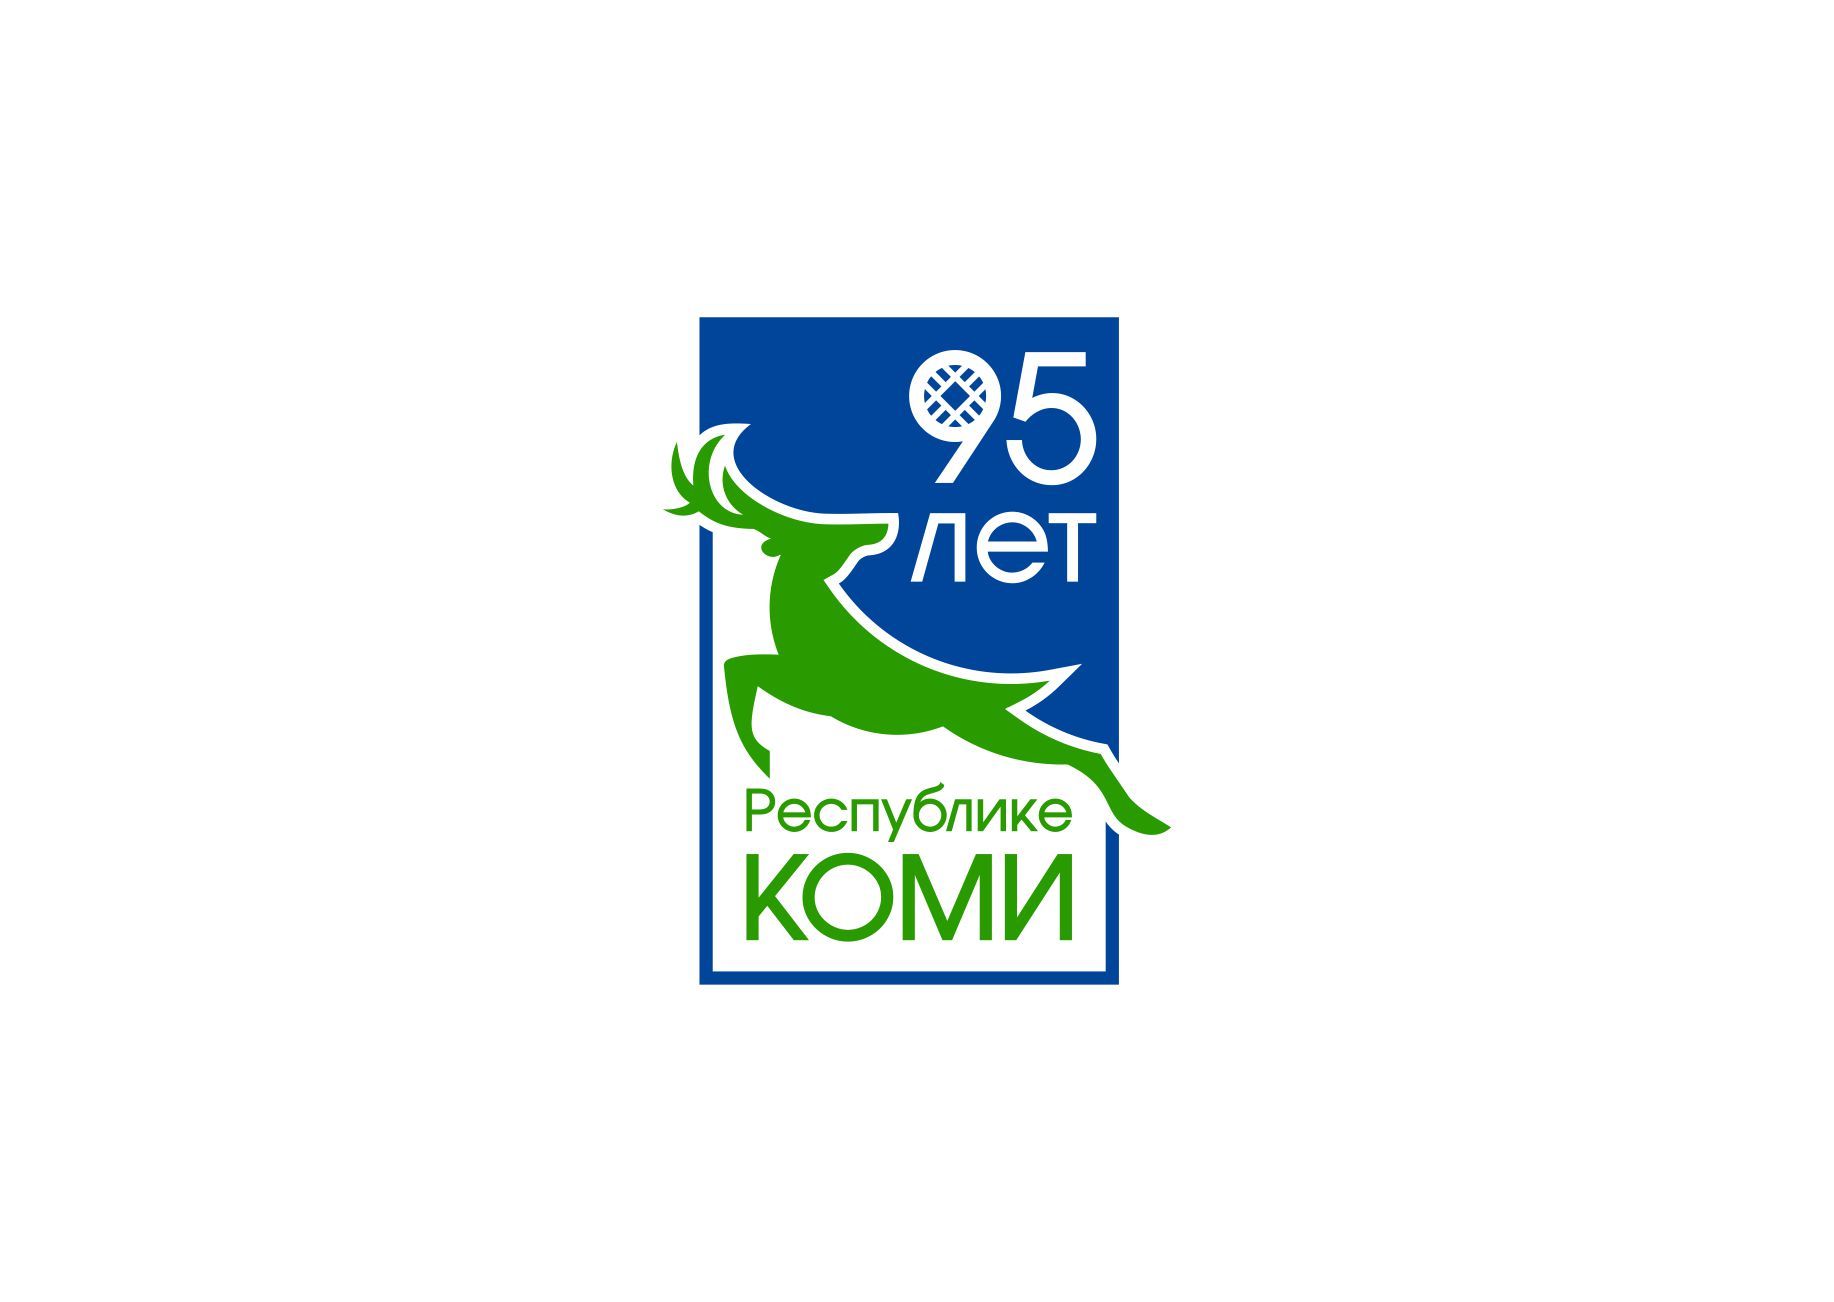 Лого и фирменный стиль для 95 лет Республике Коми  - дизайнер graphin4ik